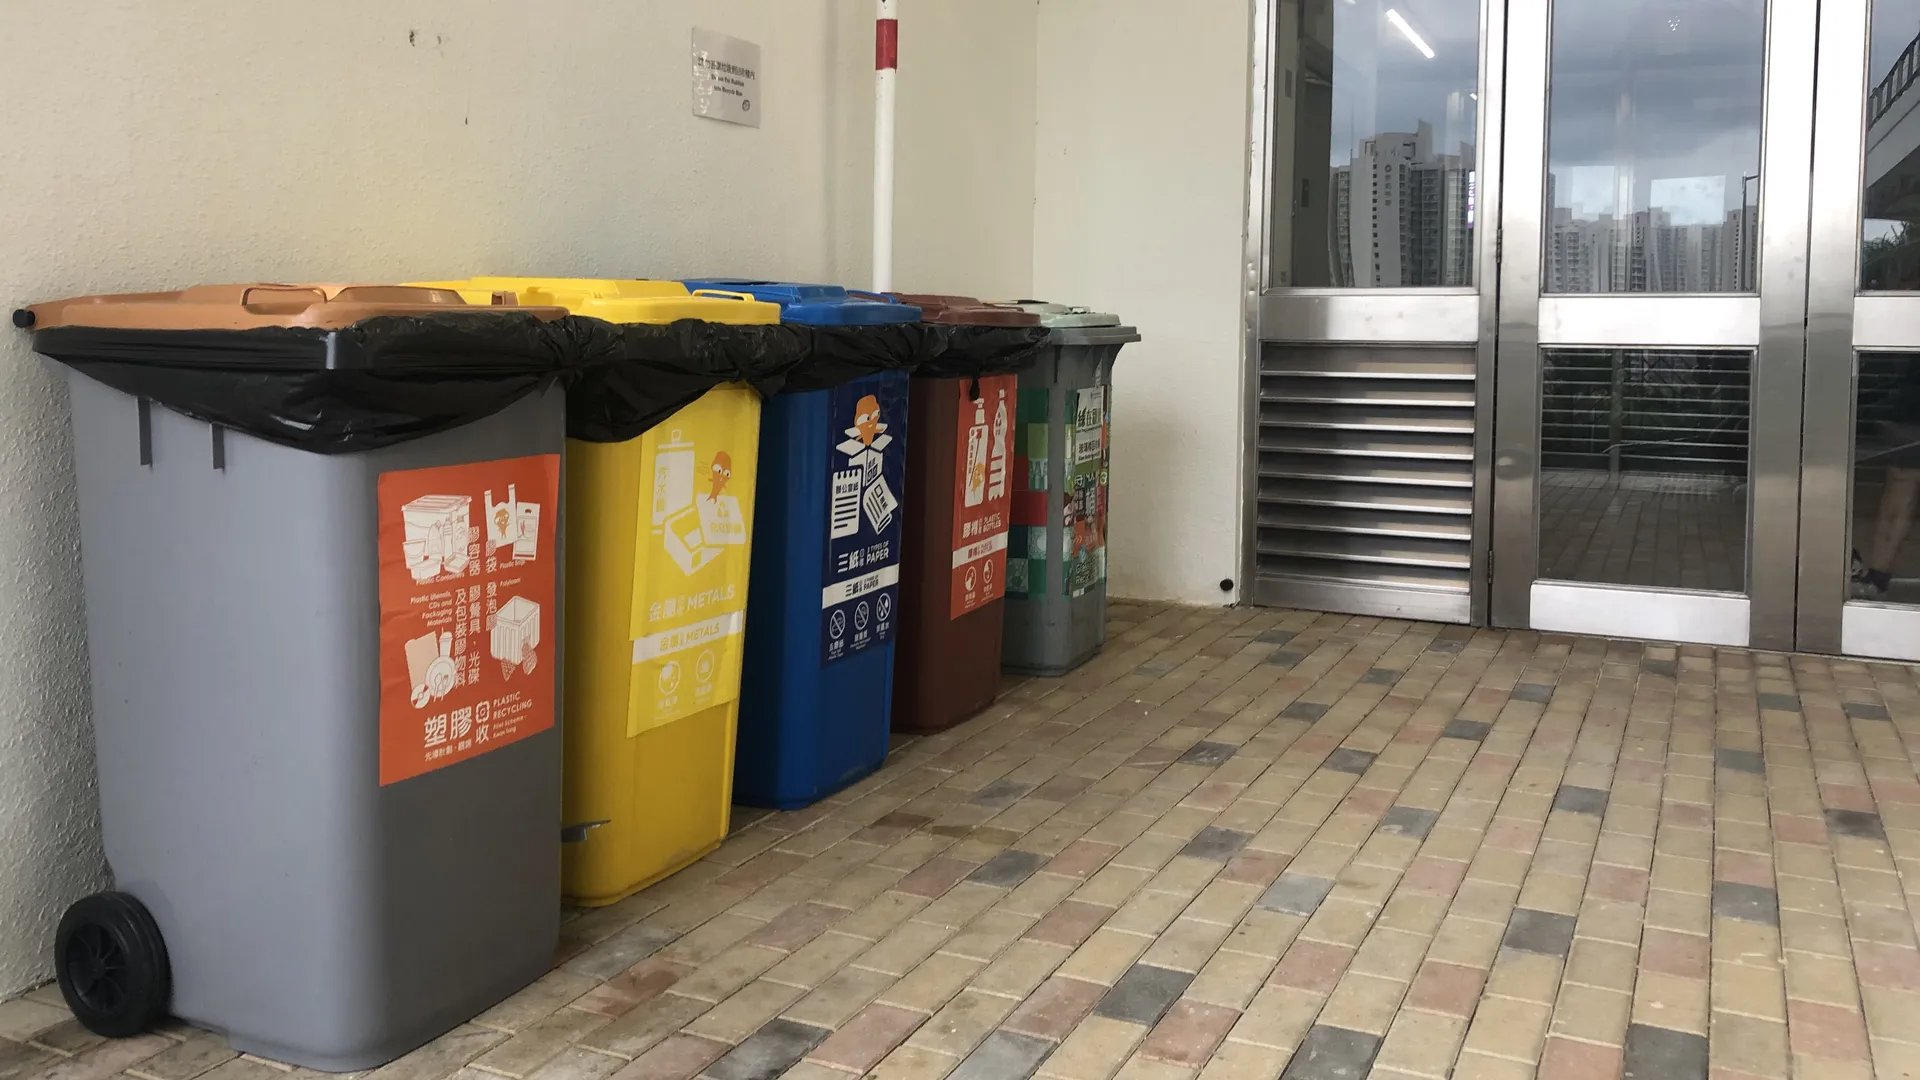 住宅楼宇的废物分类回收桶